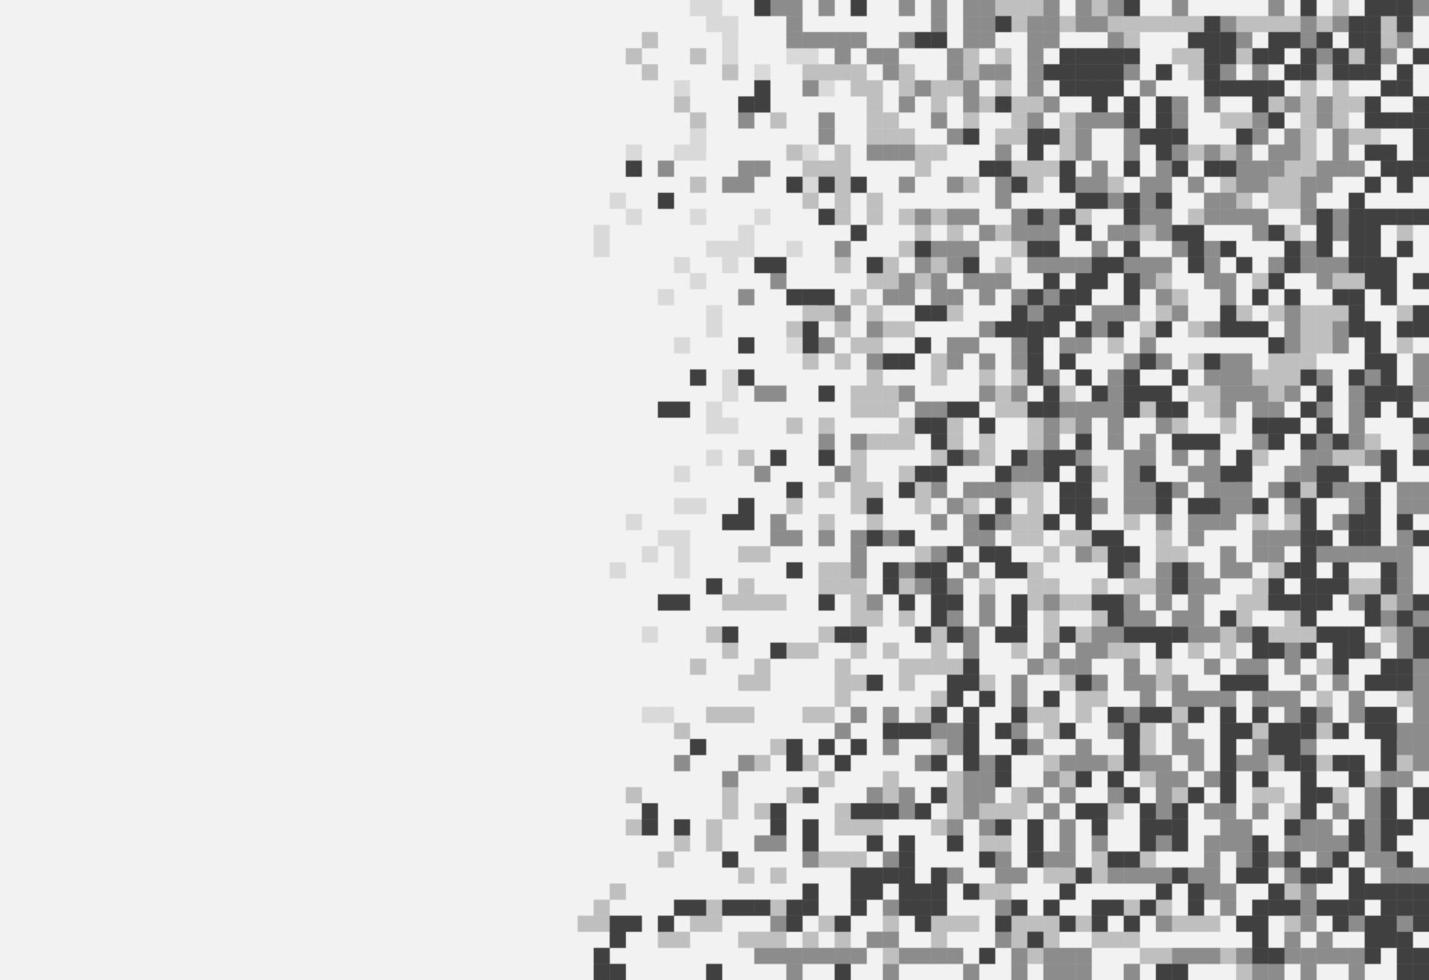 padrão abstrato de pixel de mosaico geométrico. fundo preto e branco. desenho vetorial do seu modelo gráfico de banner de cartaz de panfleto vetor